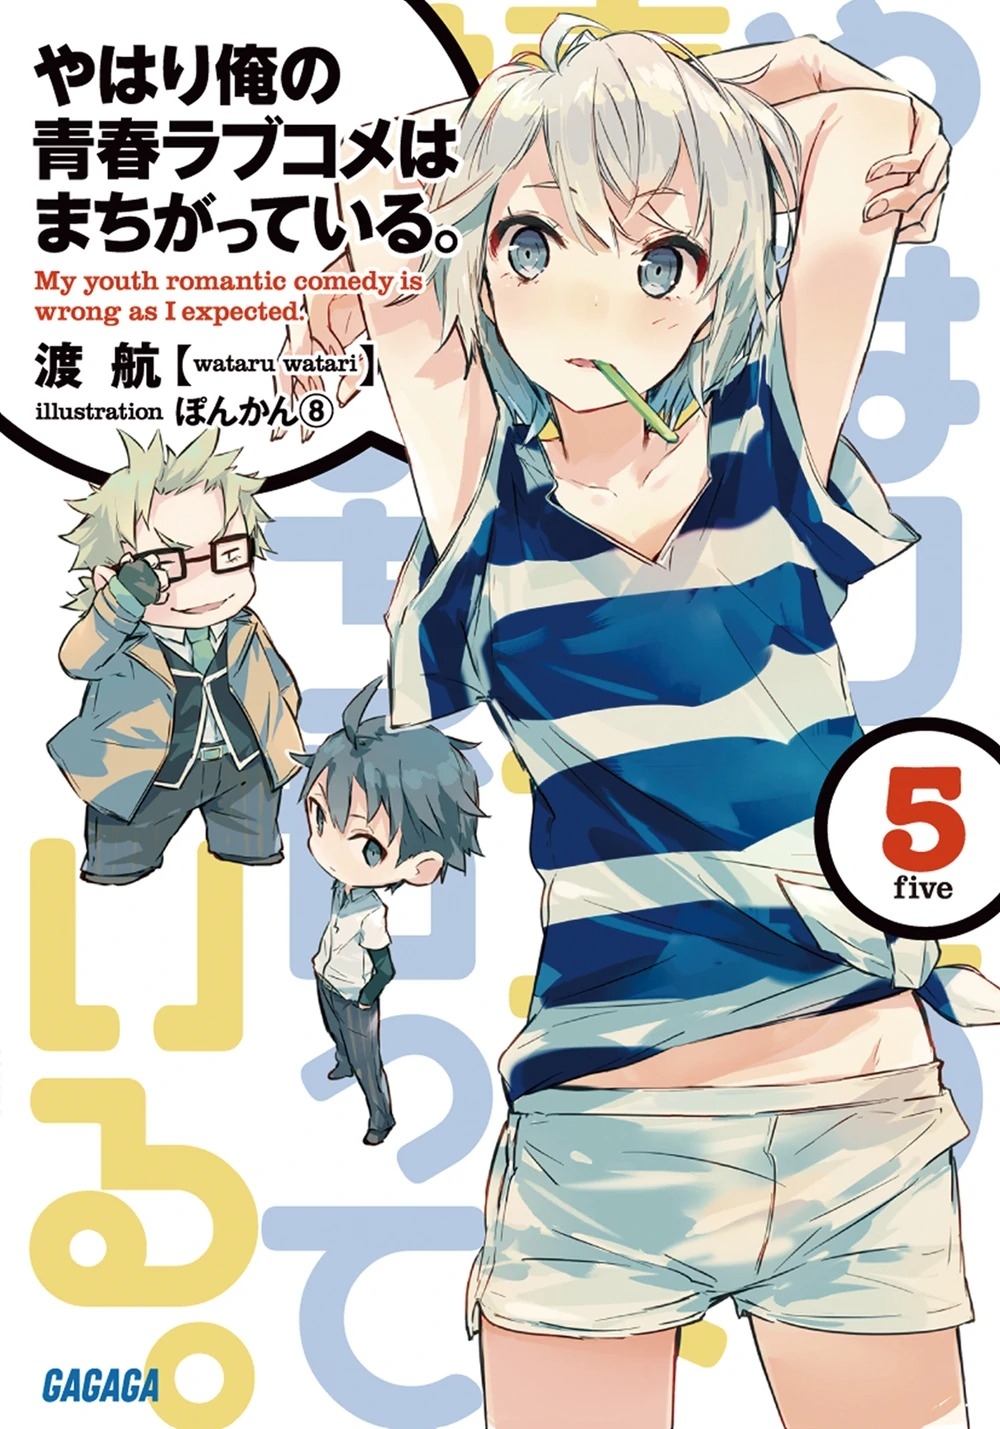 [light novel] yahari ore no seishun love come wa machigatteiru illust compliation 51